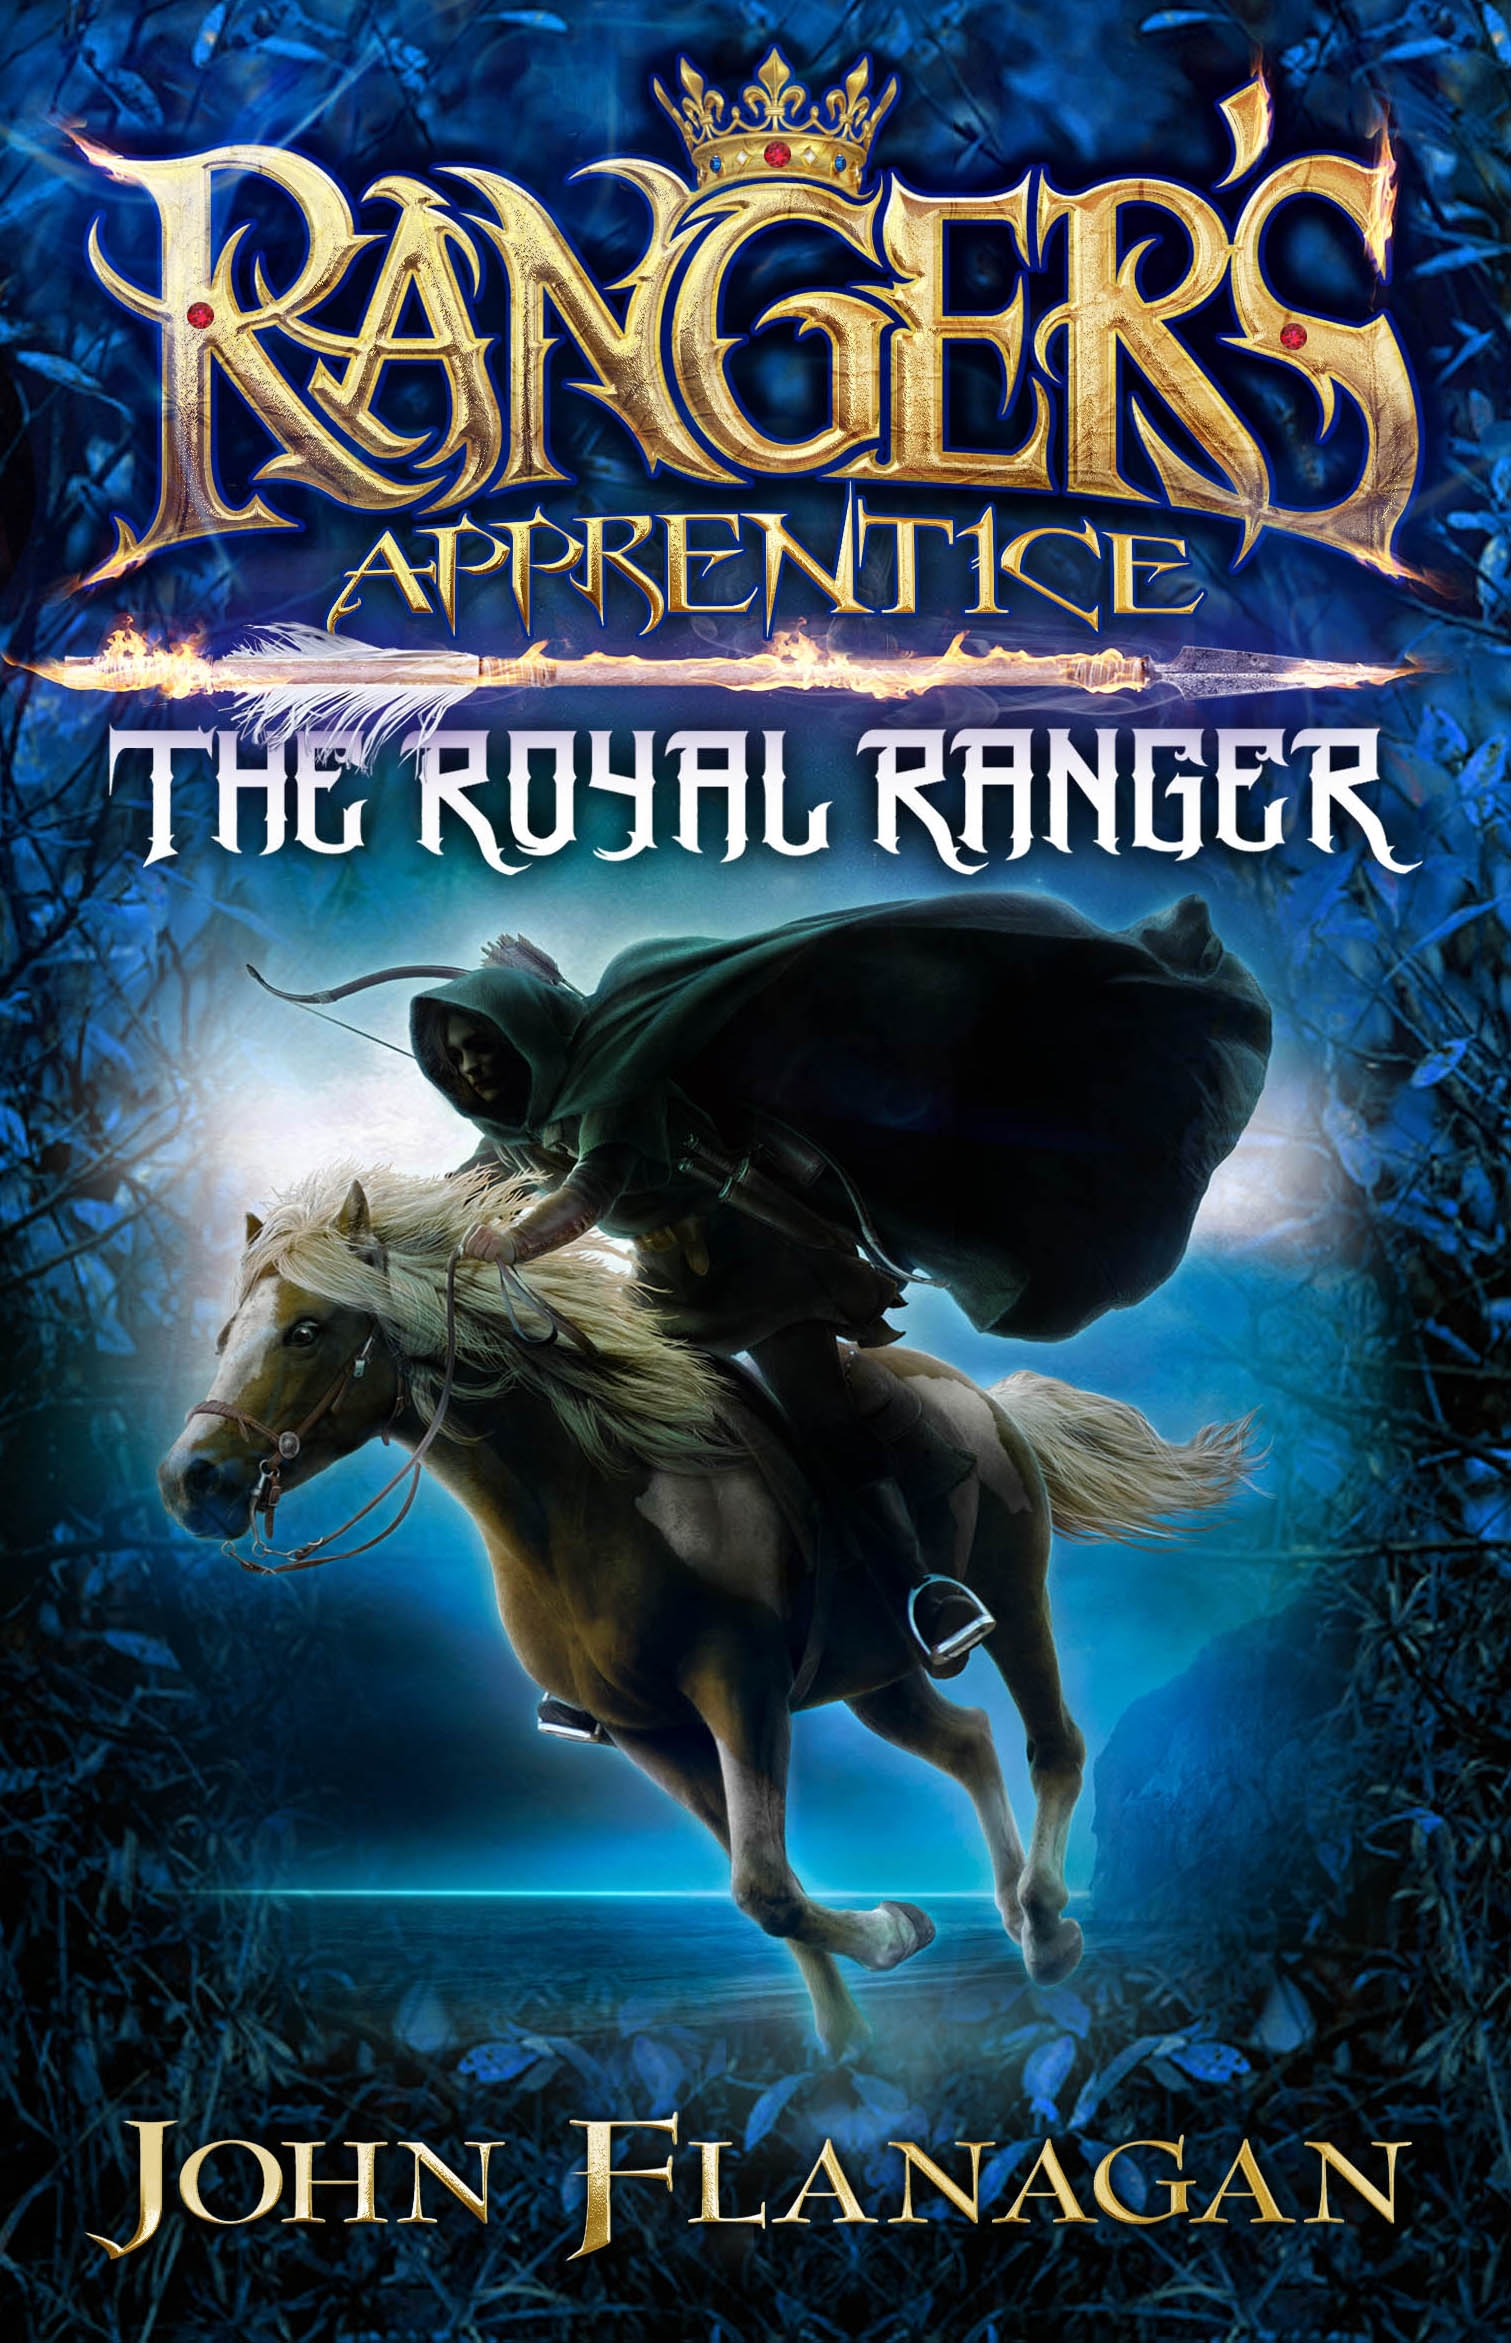 Ranger's Apprentice: The Royal Ranger by John Flanagan - Penguin Books New Zealand